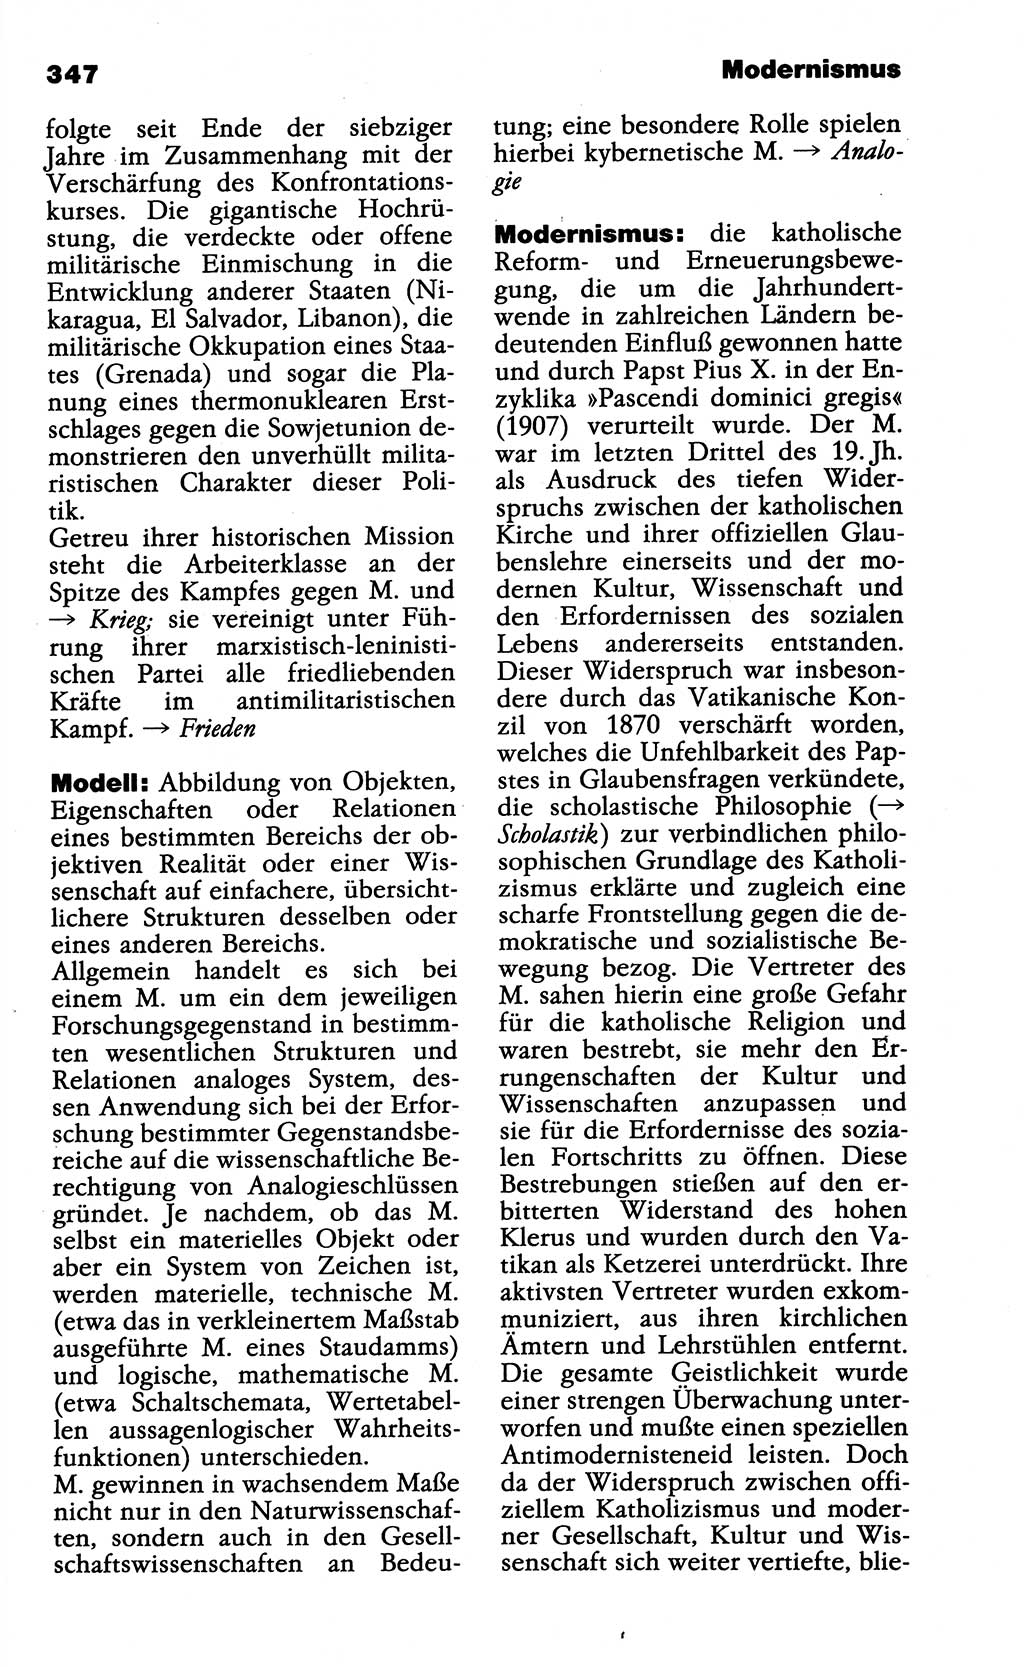 Wörterbuch der marxistisch-leninistischen Philosophie [Deutsche Demokratische Republik (DDR)] 1985, Seite 347 (Wb. ML Phil. DDR 1985, S. 347)